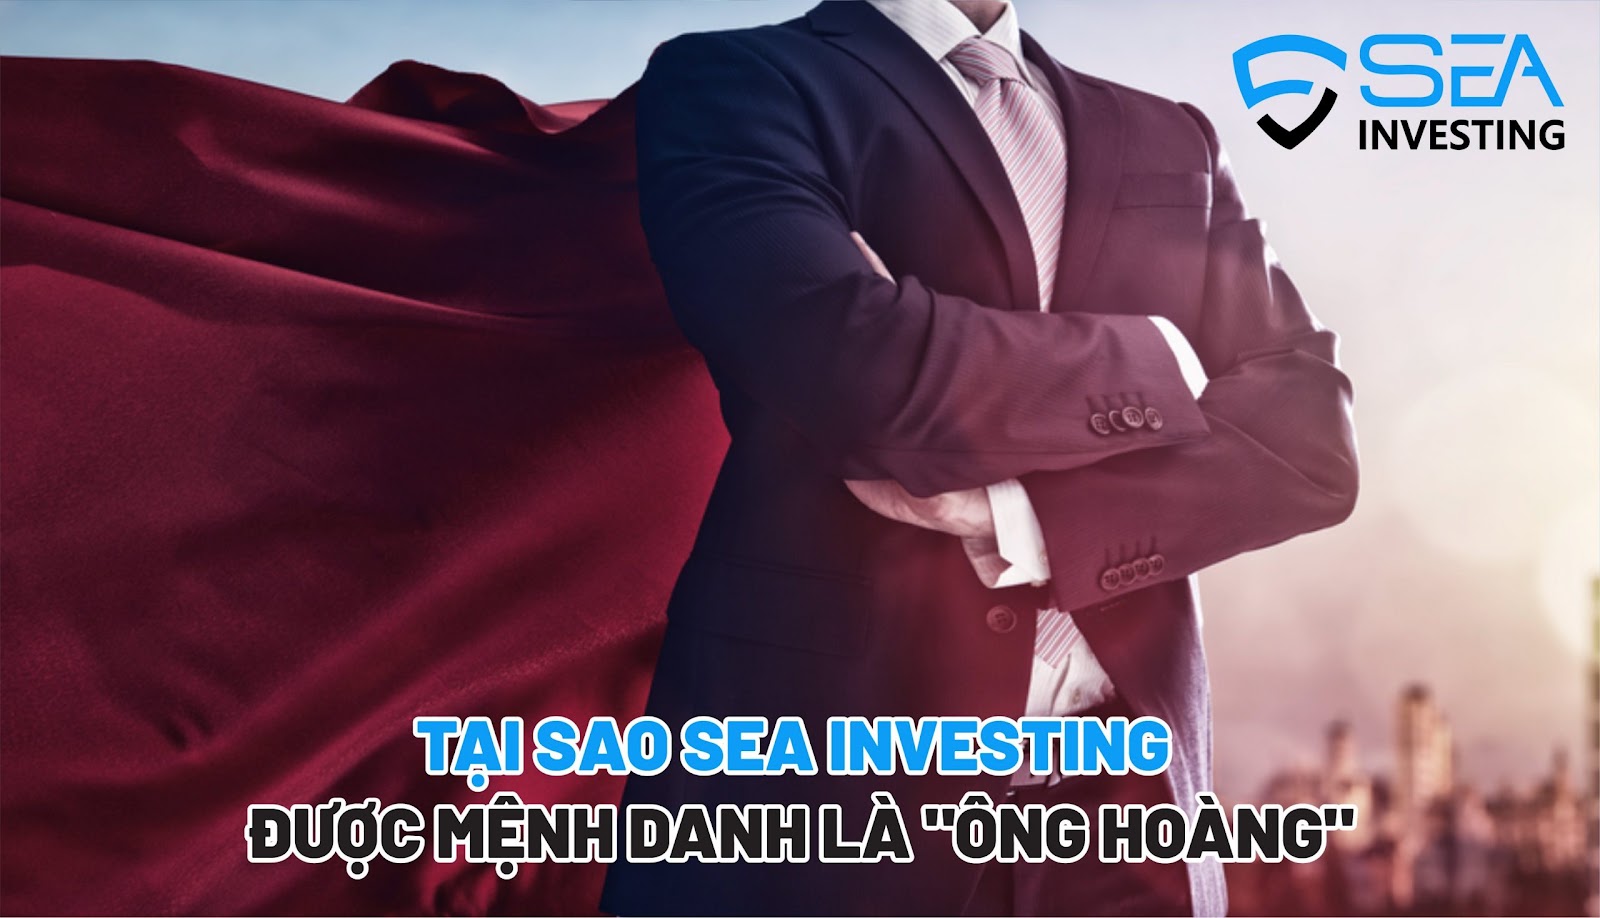 Sàn SEA Investing Ông Hoàng Môi Giới Số 1 Việt Nam